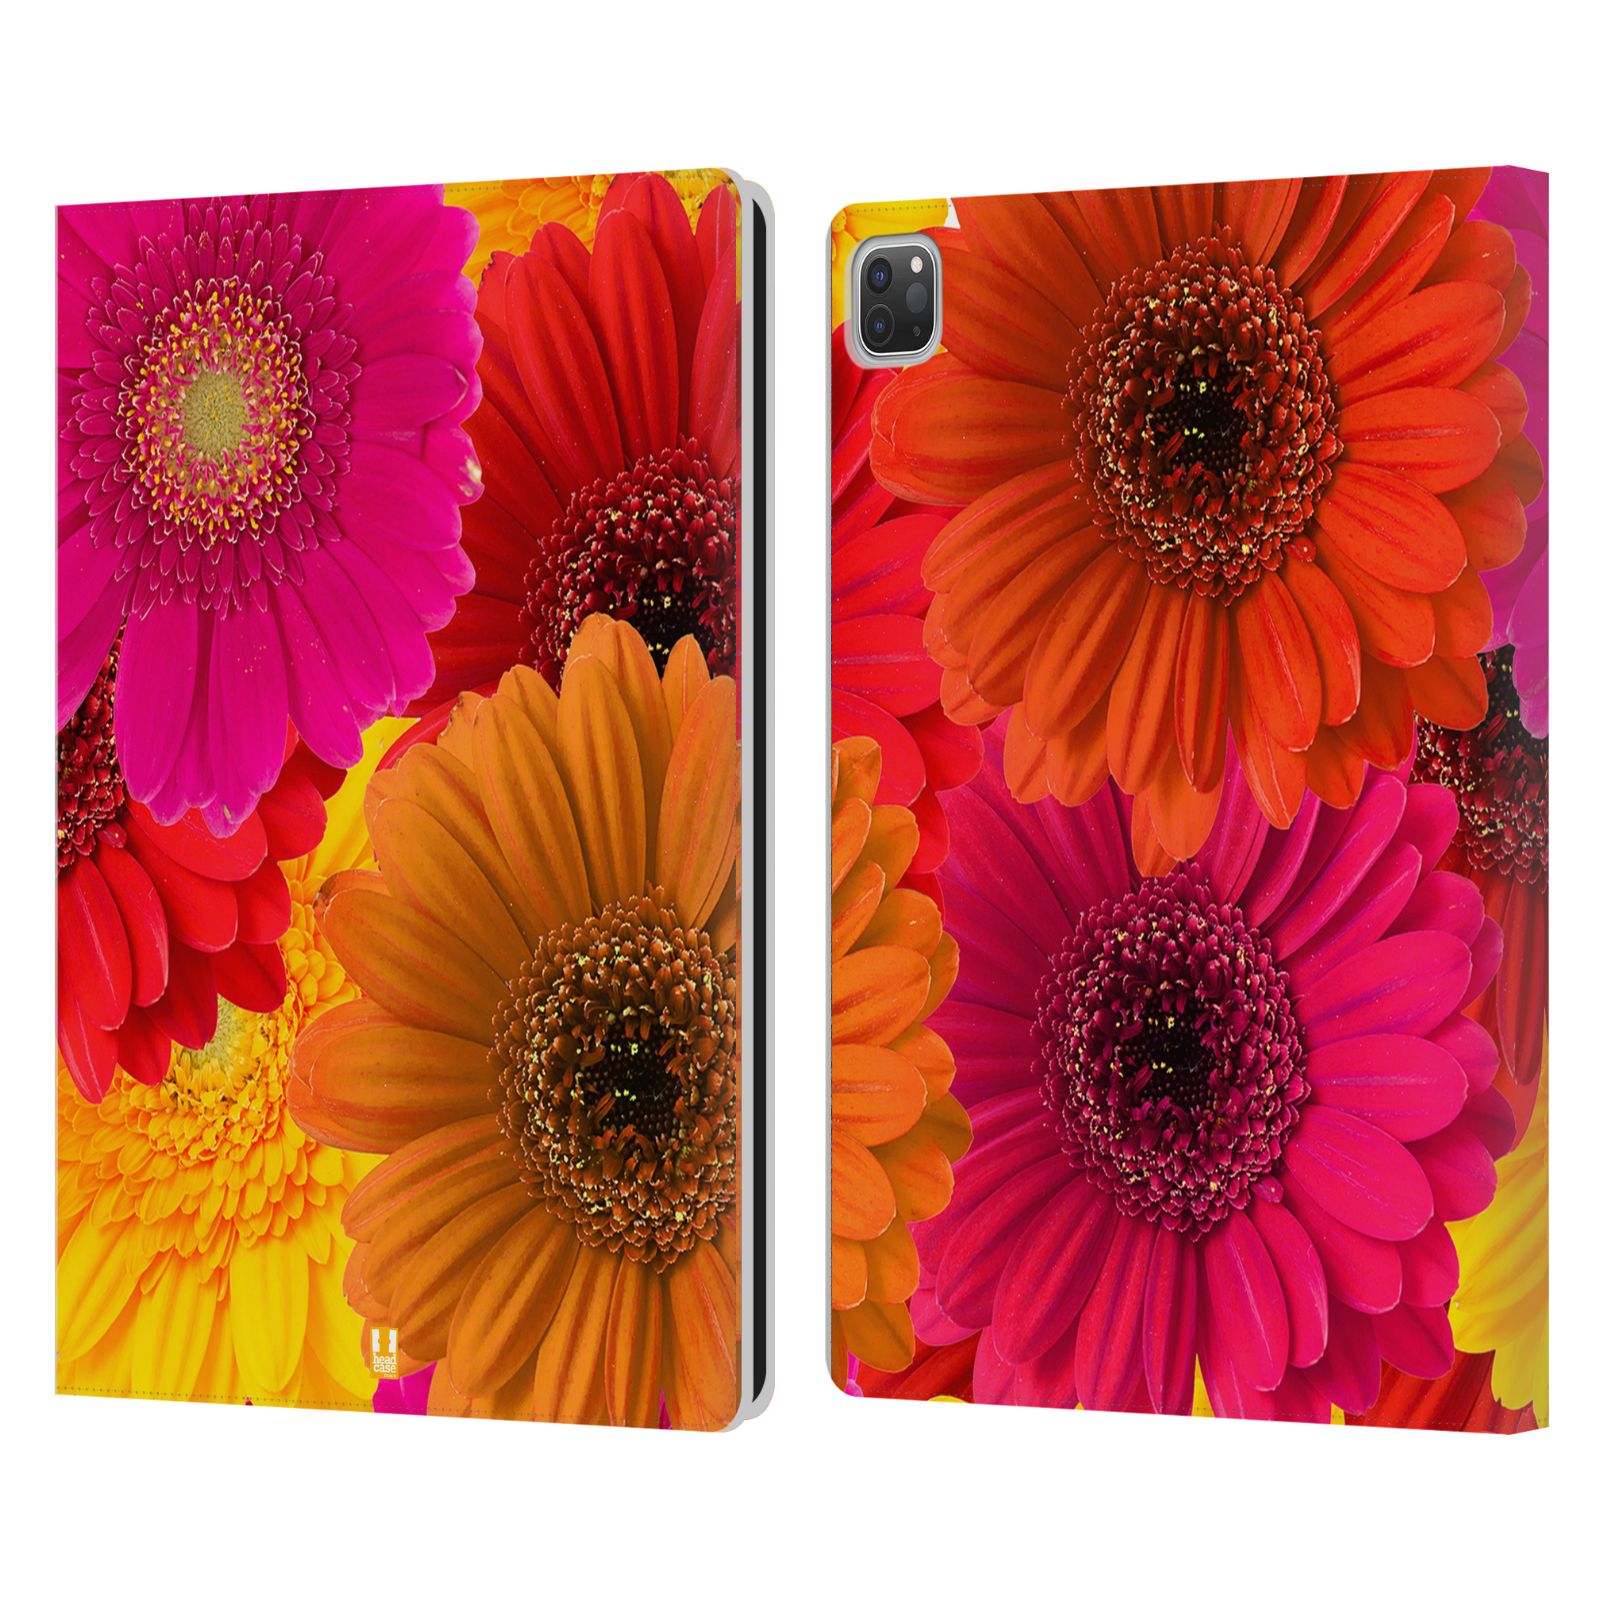 Pouzdro pro tablet Apple Ipad Pro 12.9 - HEAD CASE - květy foto fialová, oranžová GERBERA